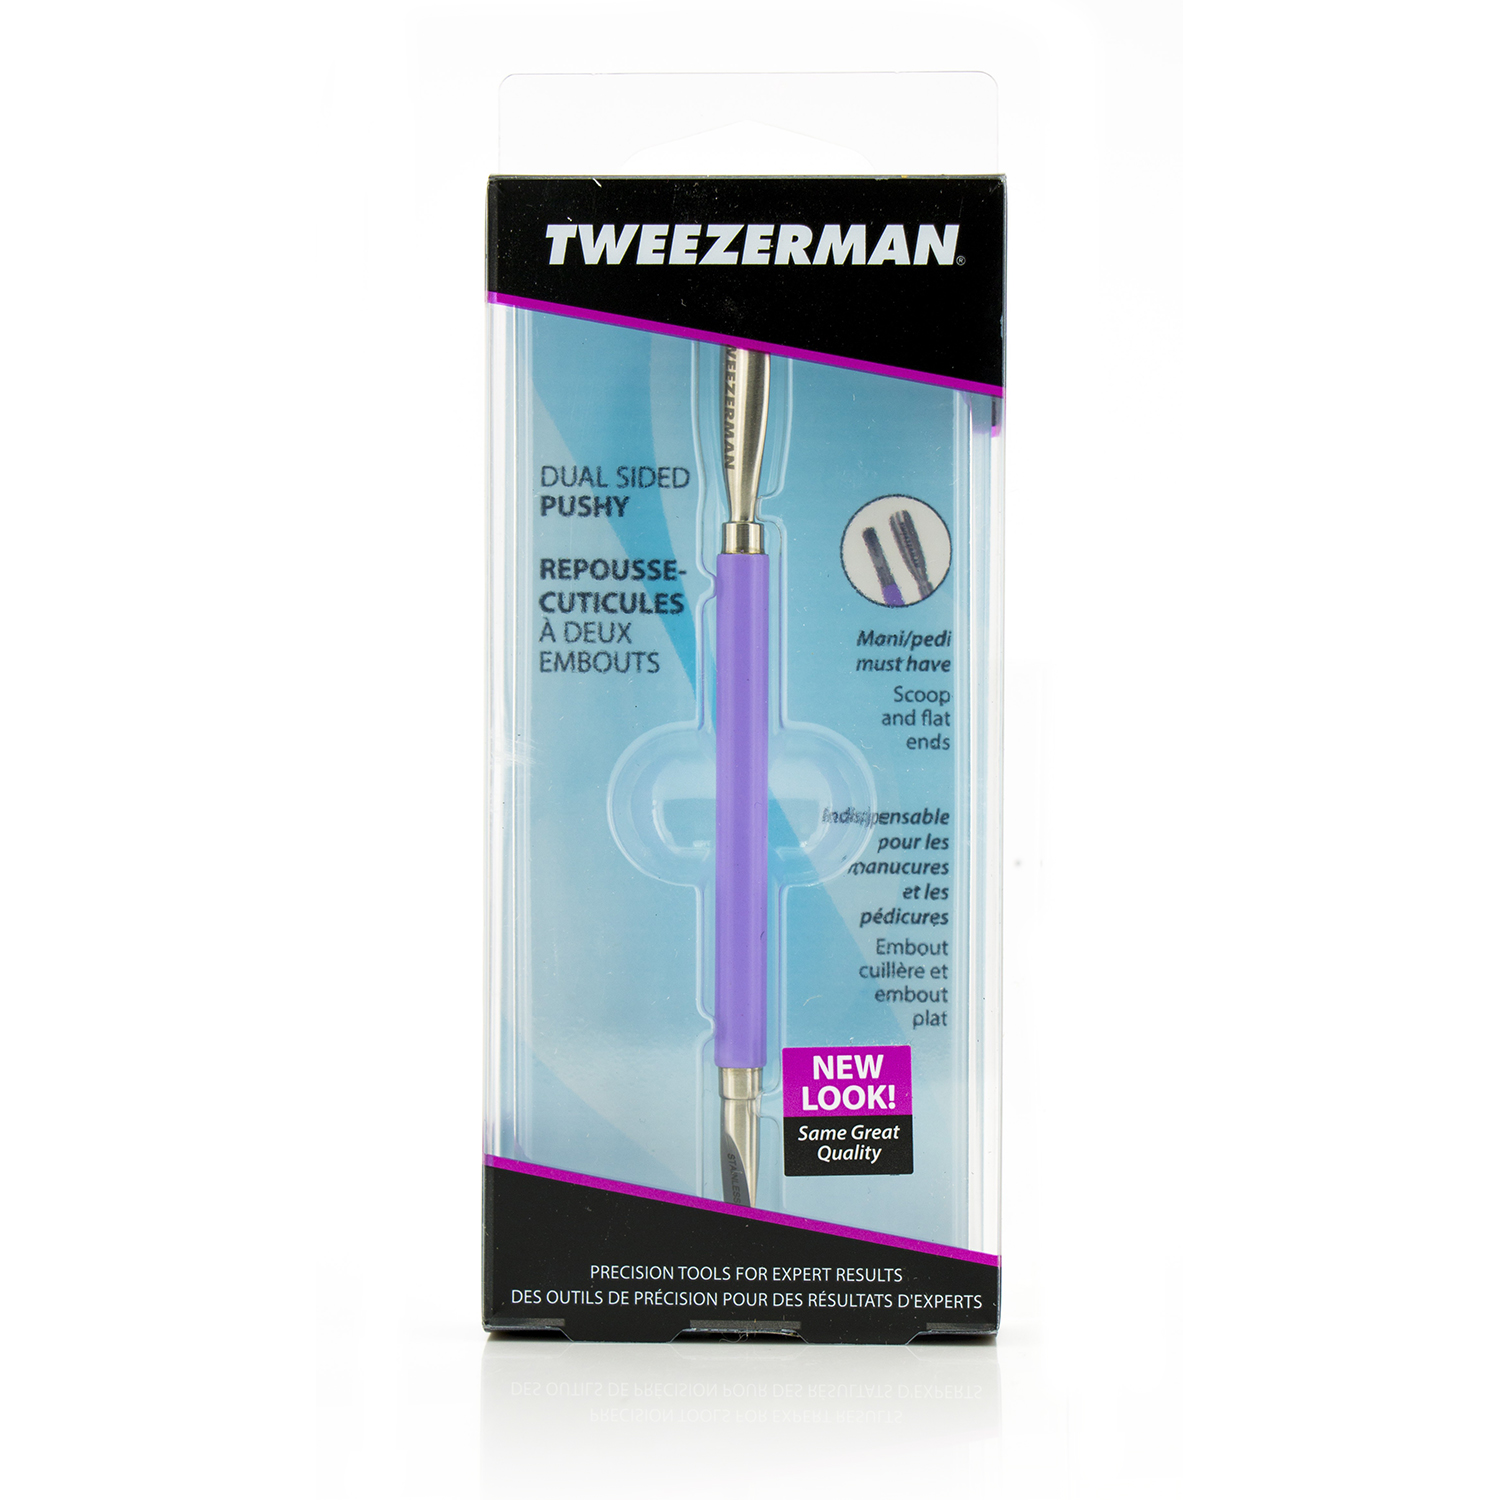 Tweezerman - Dual Nail Brush